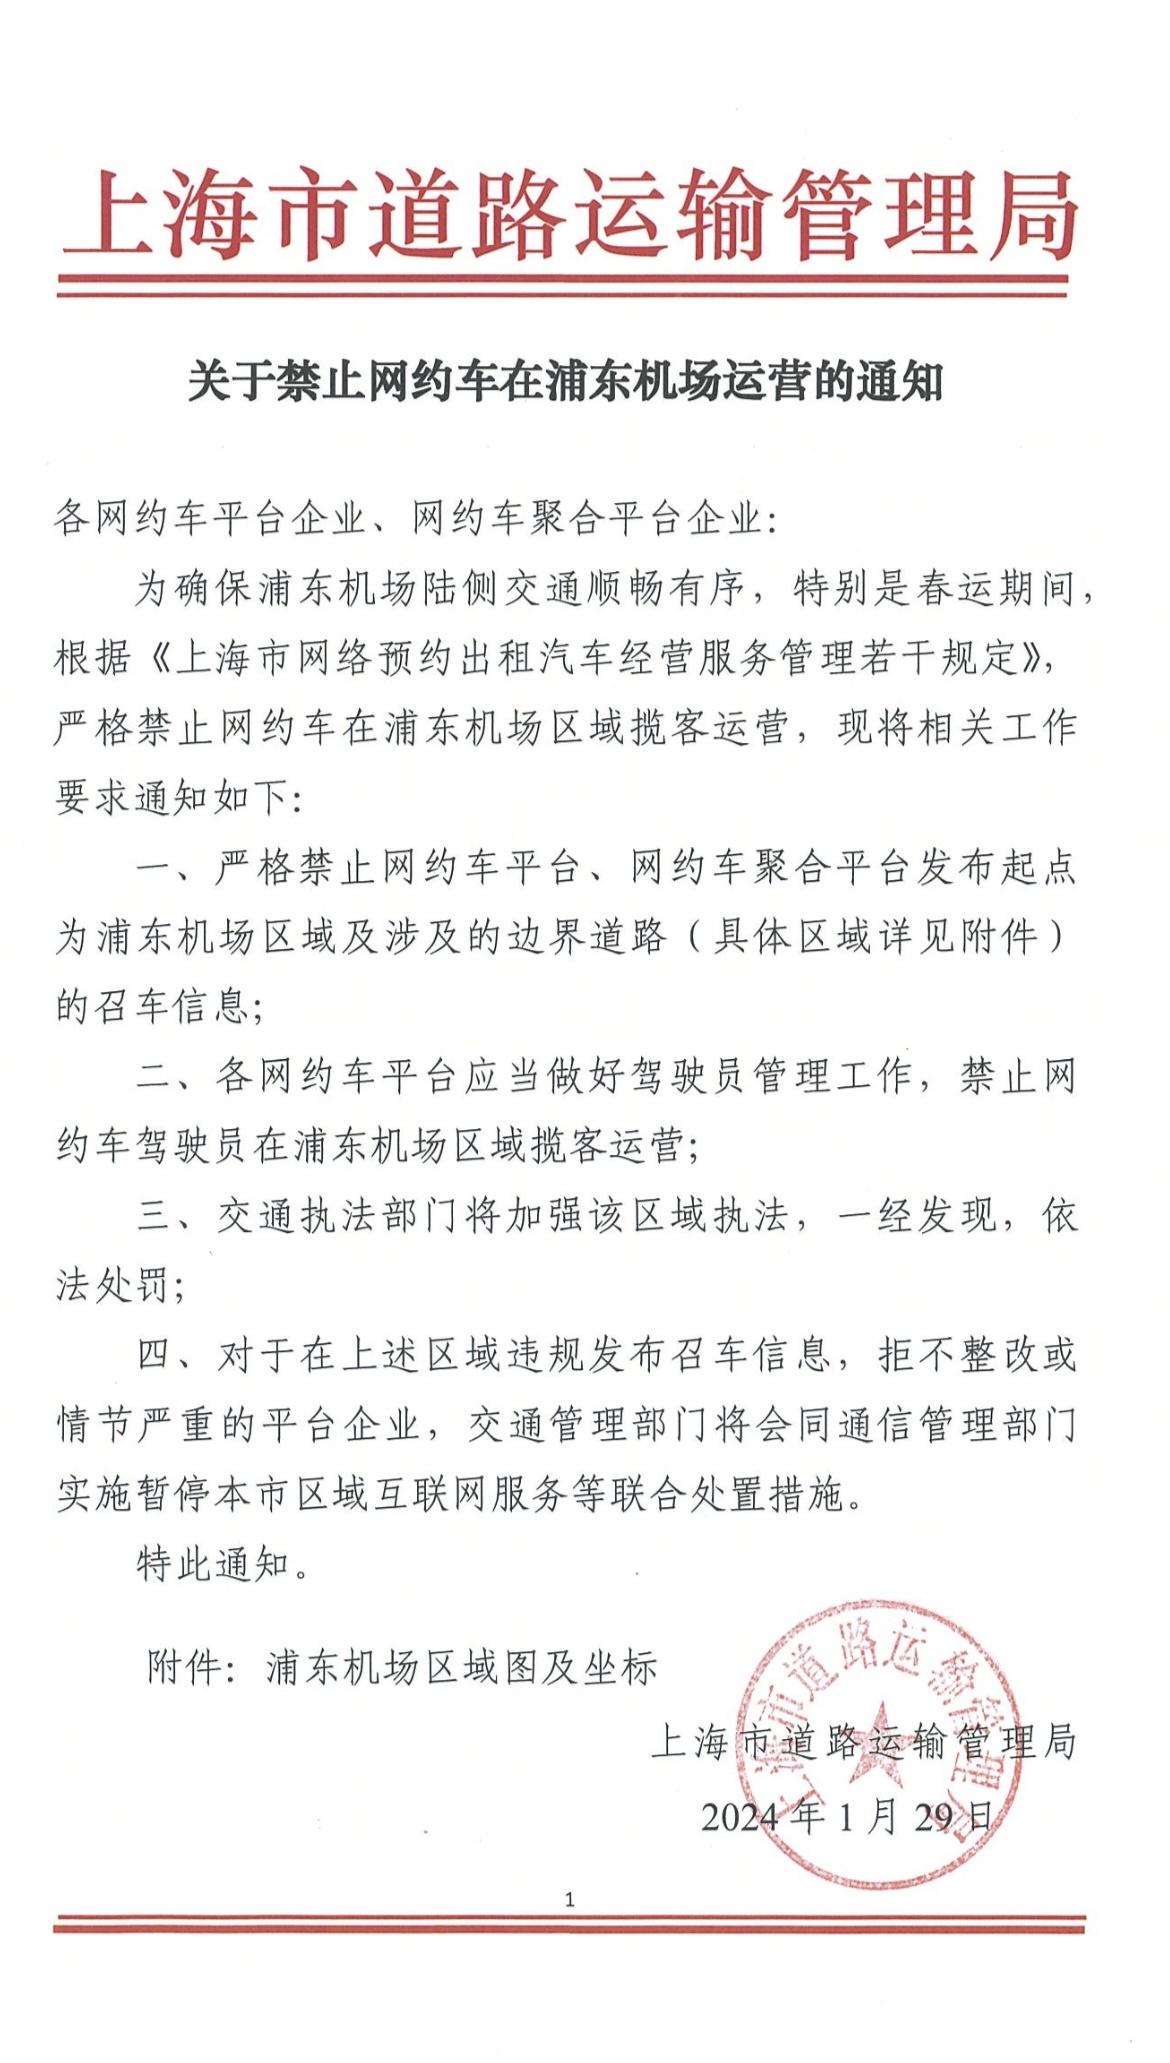 五问上海禁止网约车在浦东机场运营（上海浦东机场 网约车）